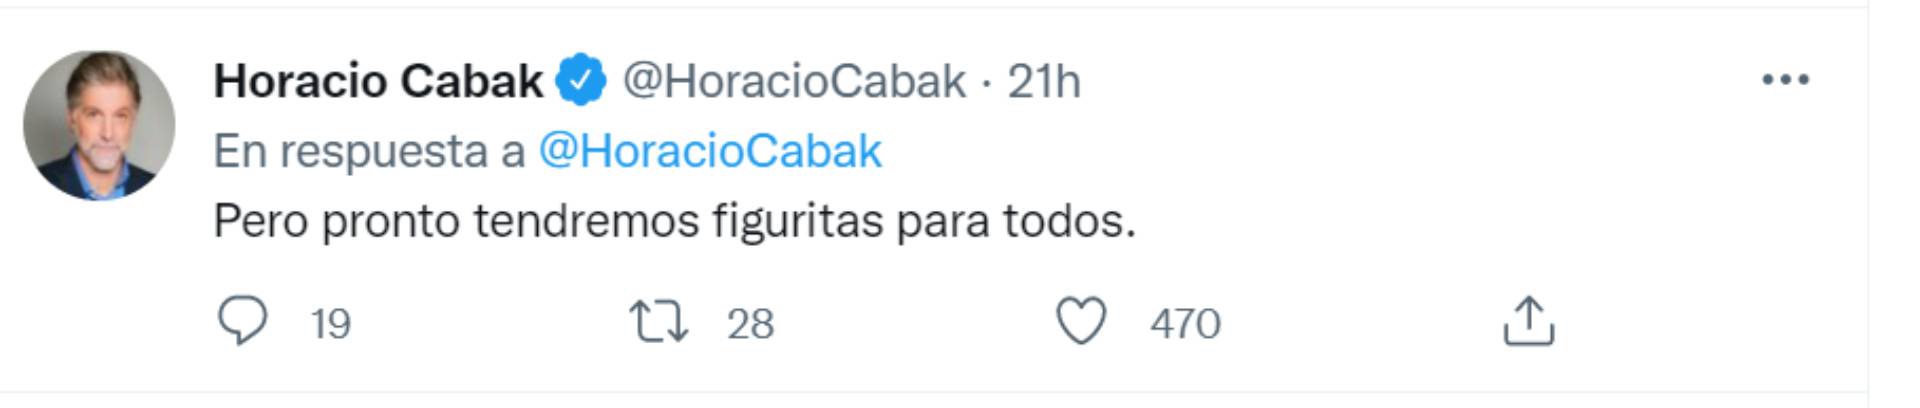 Los mensajes de Horacio Cabak